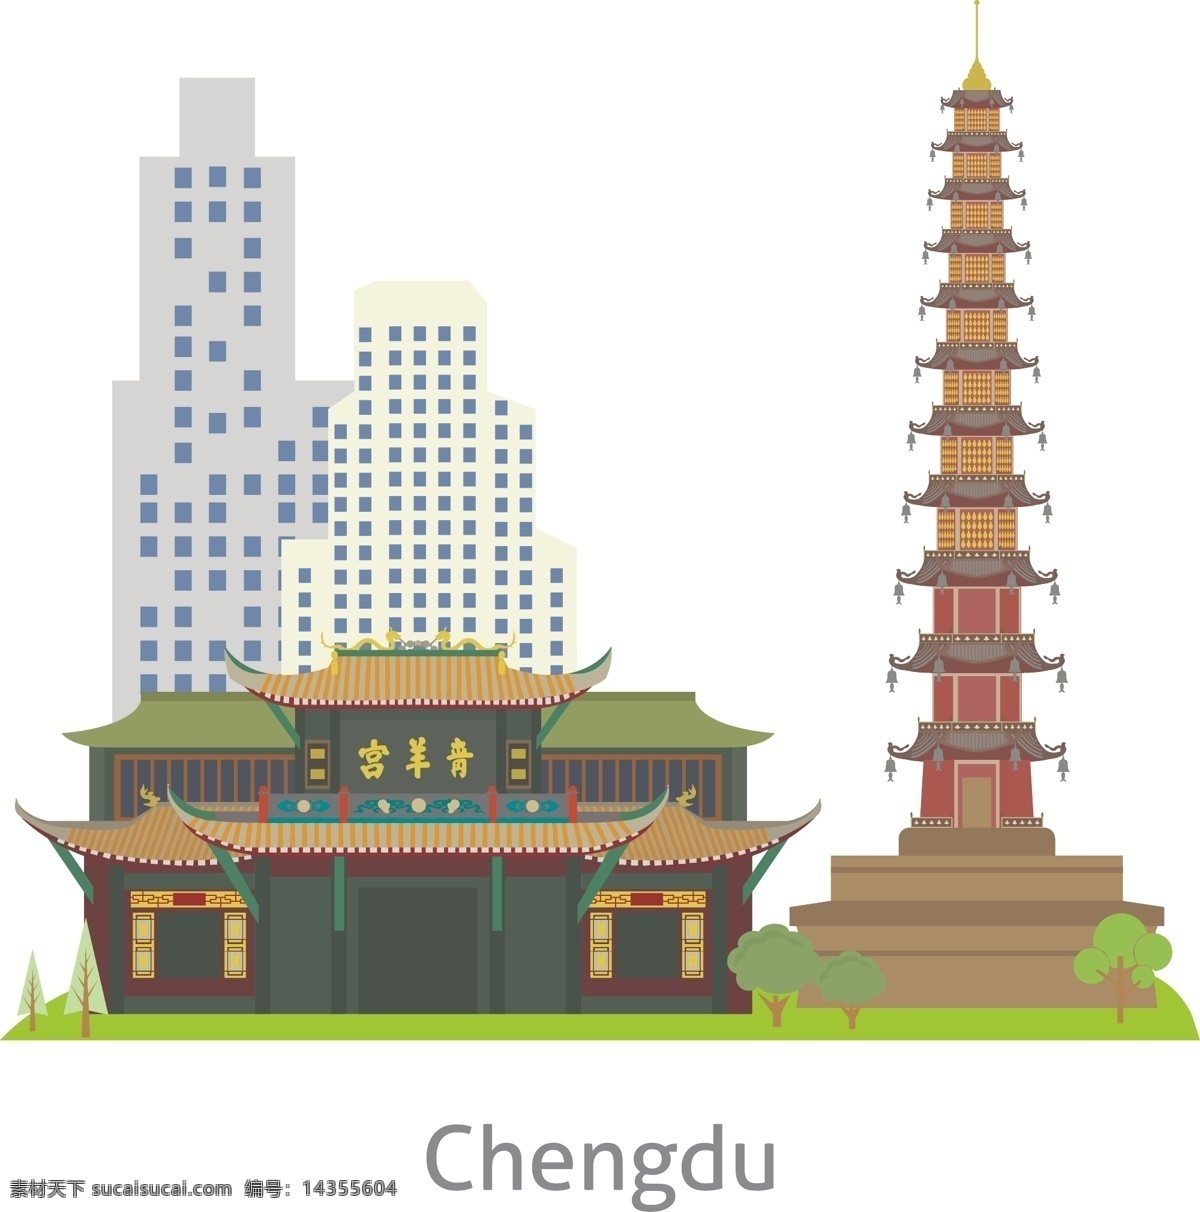 中国建筑 中国古建筑 圆明圆 中华风情 地区建筑 区域建筑